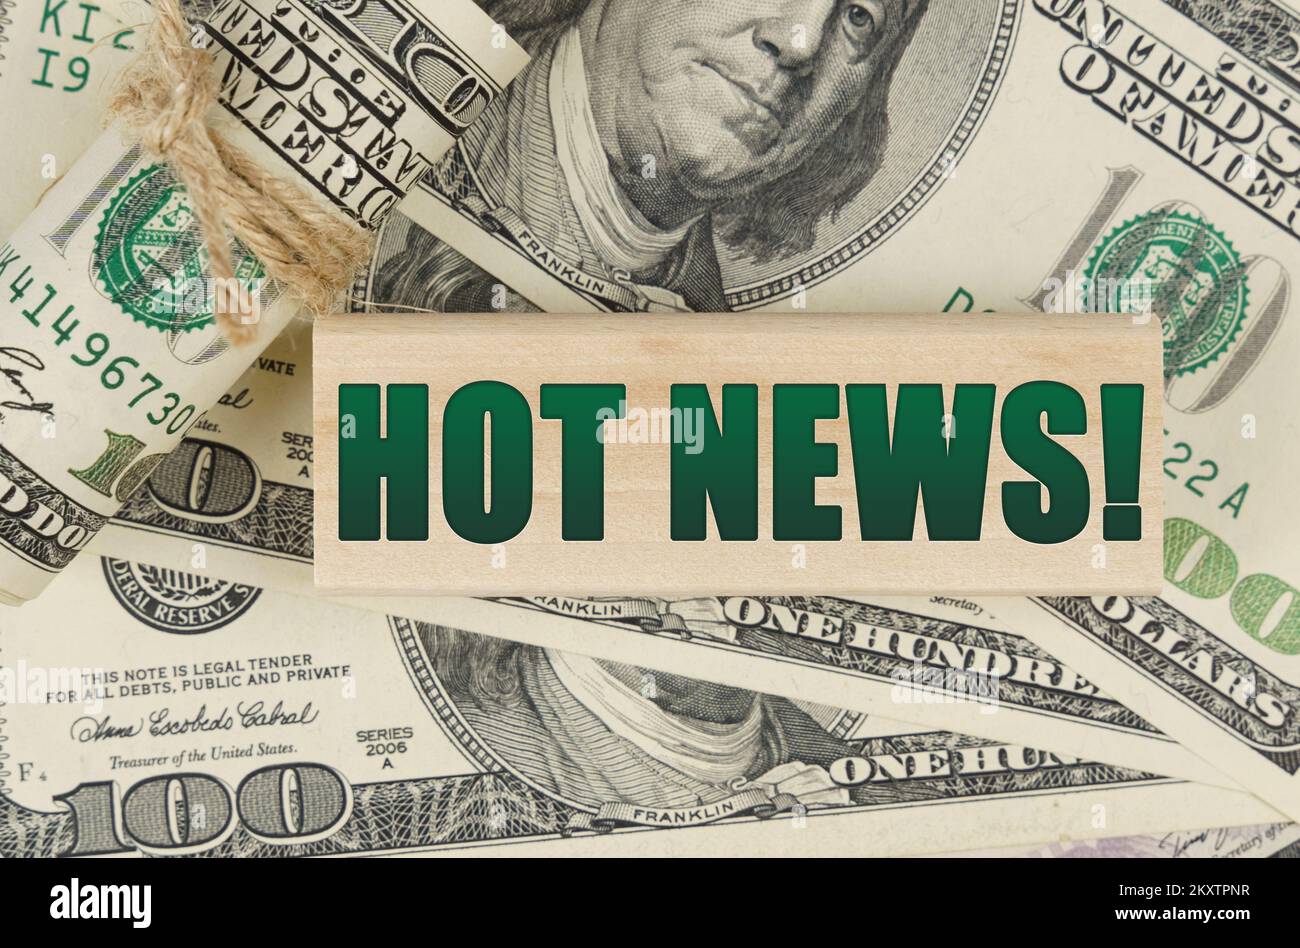 Geschäfts- und Finanzkonzept. Auf dem Dollar ist ein Holzteller mit der Inschrift "HOT NEWS" Stockfoto